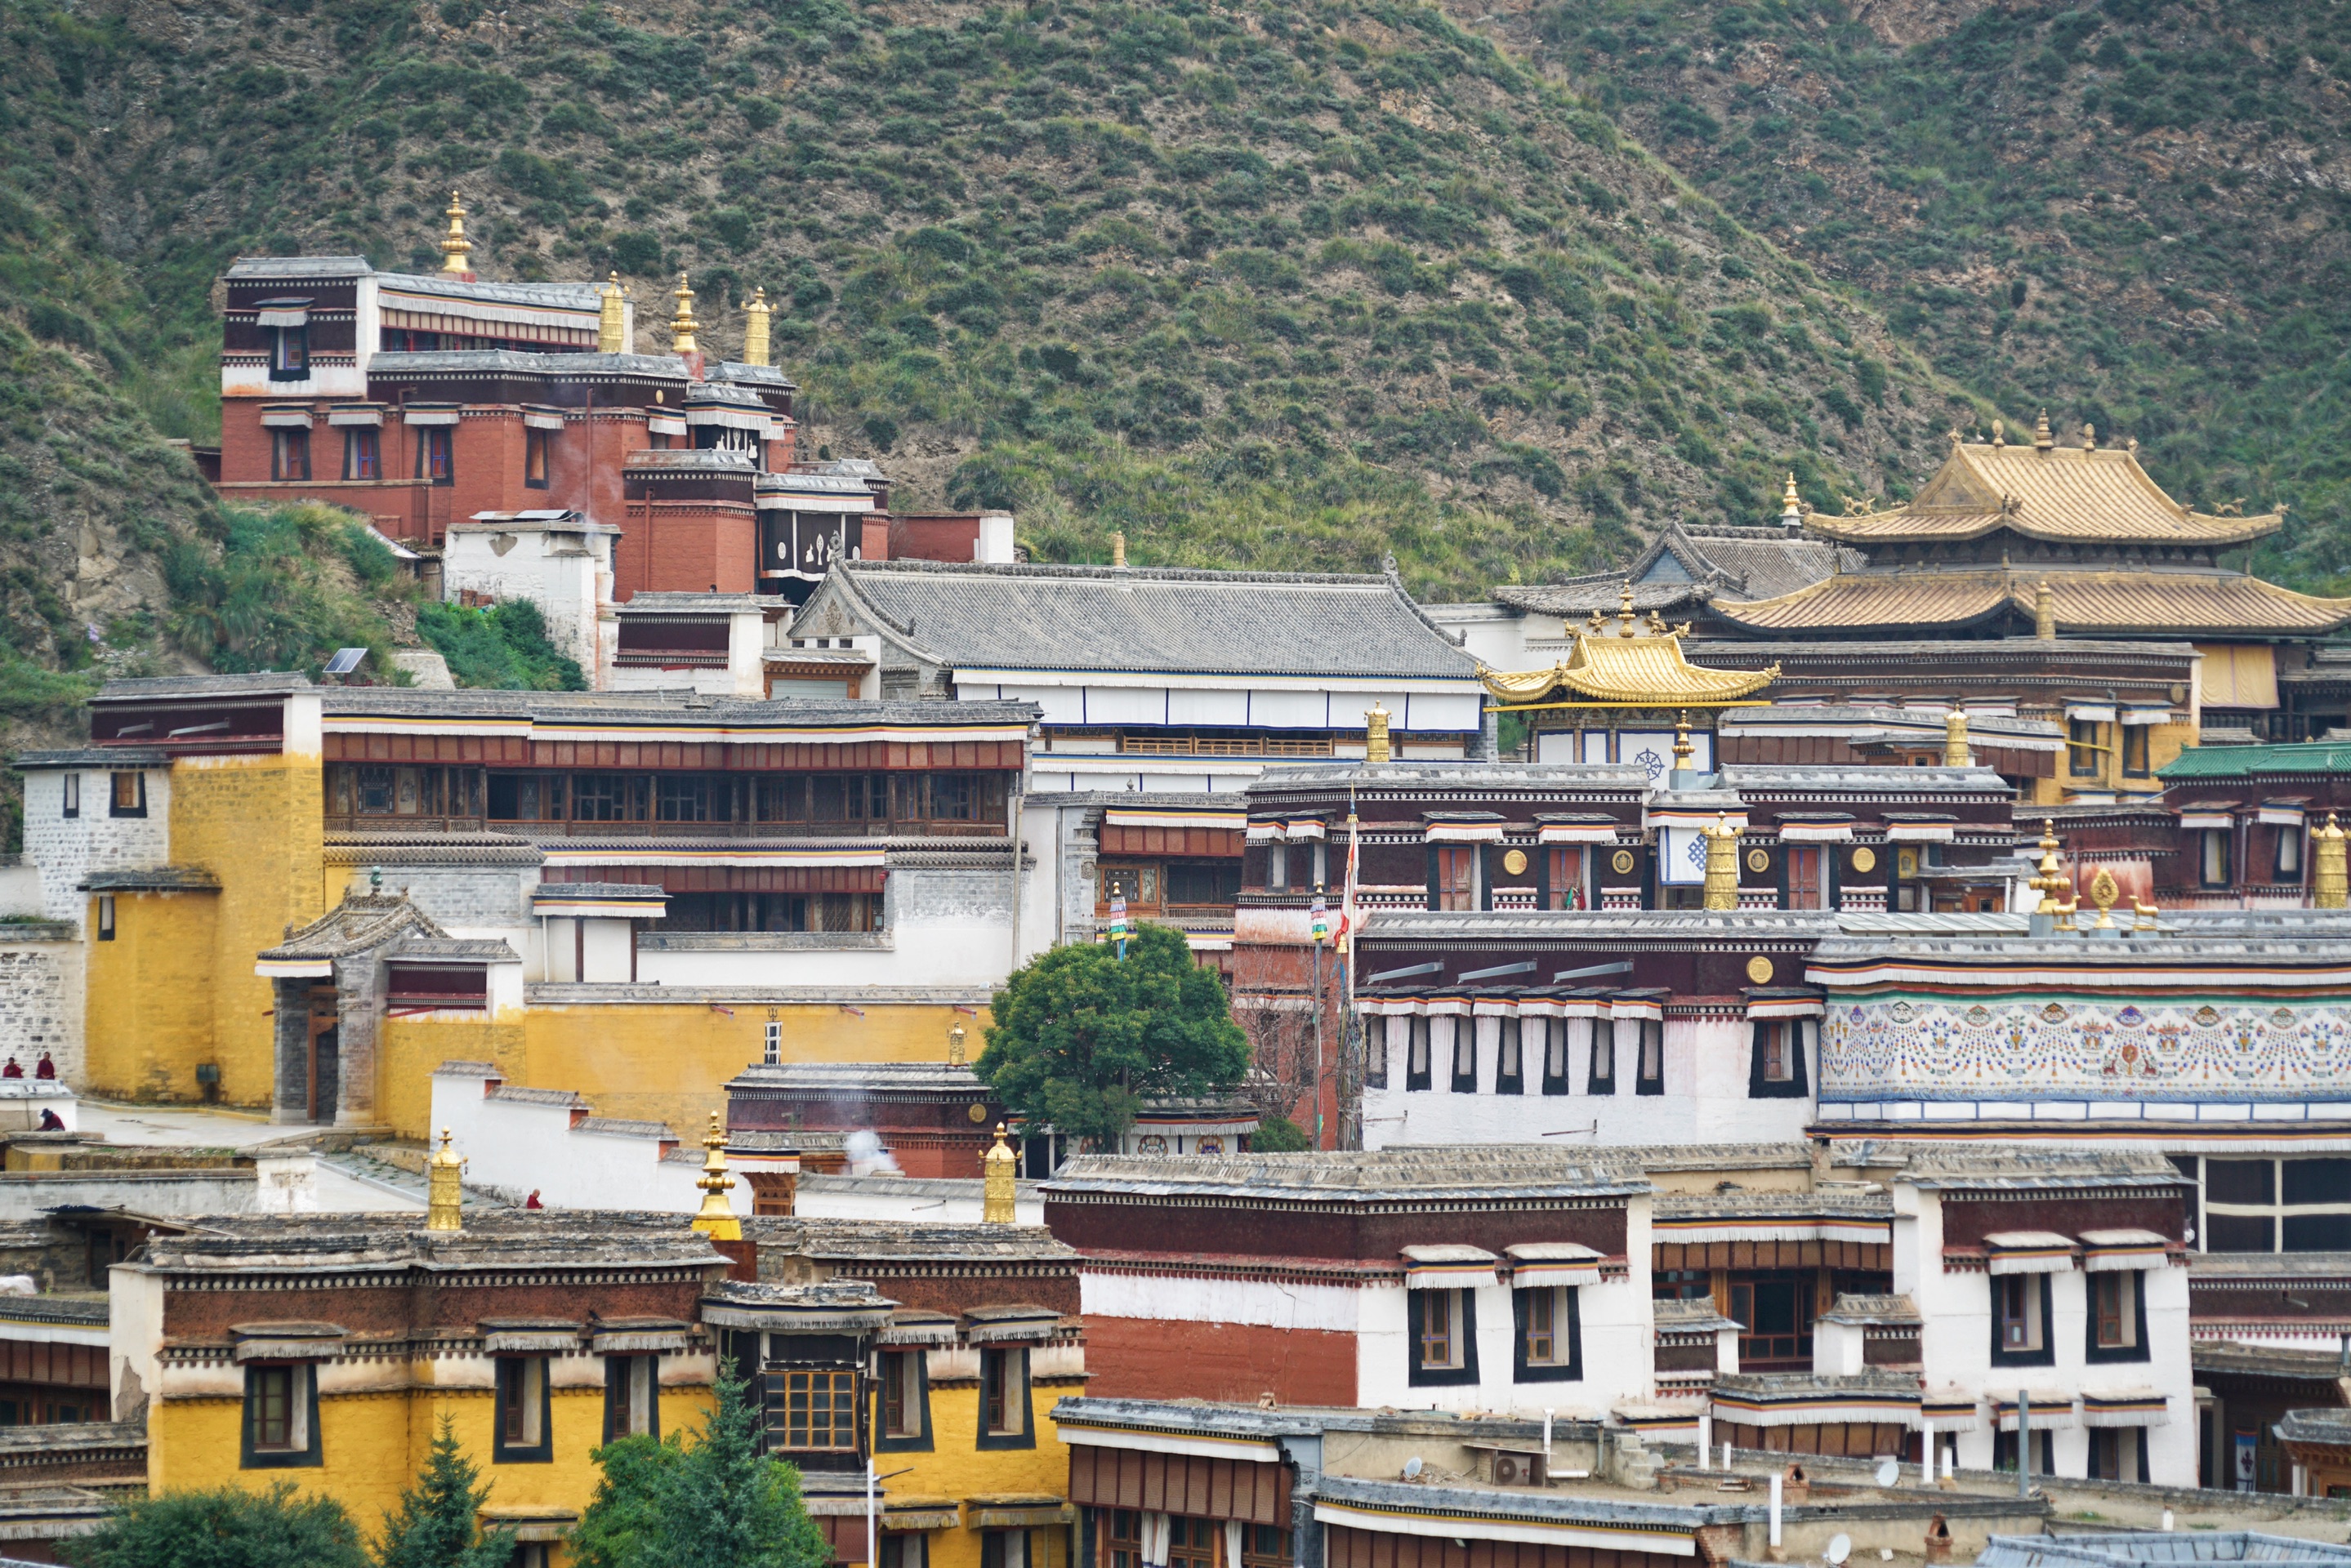 拉卜楞寺藏传佛教格鲁派六大寺院之一被世界誉为“世界藏学府”